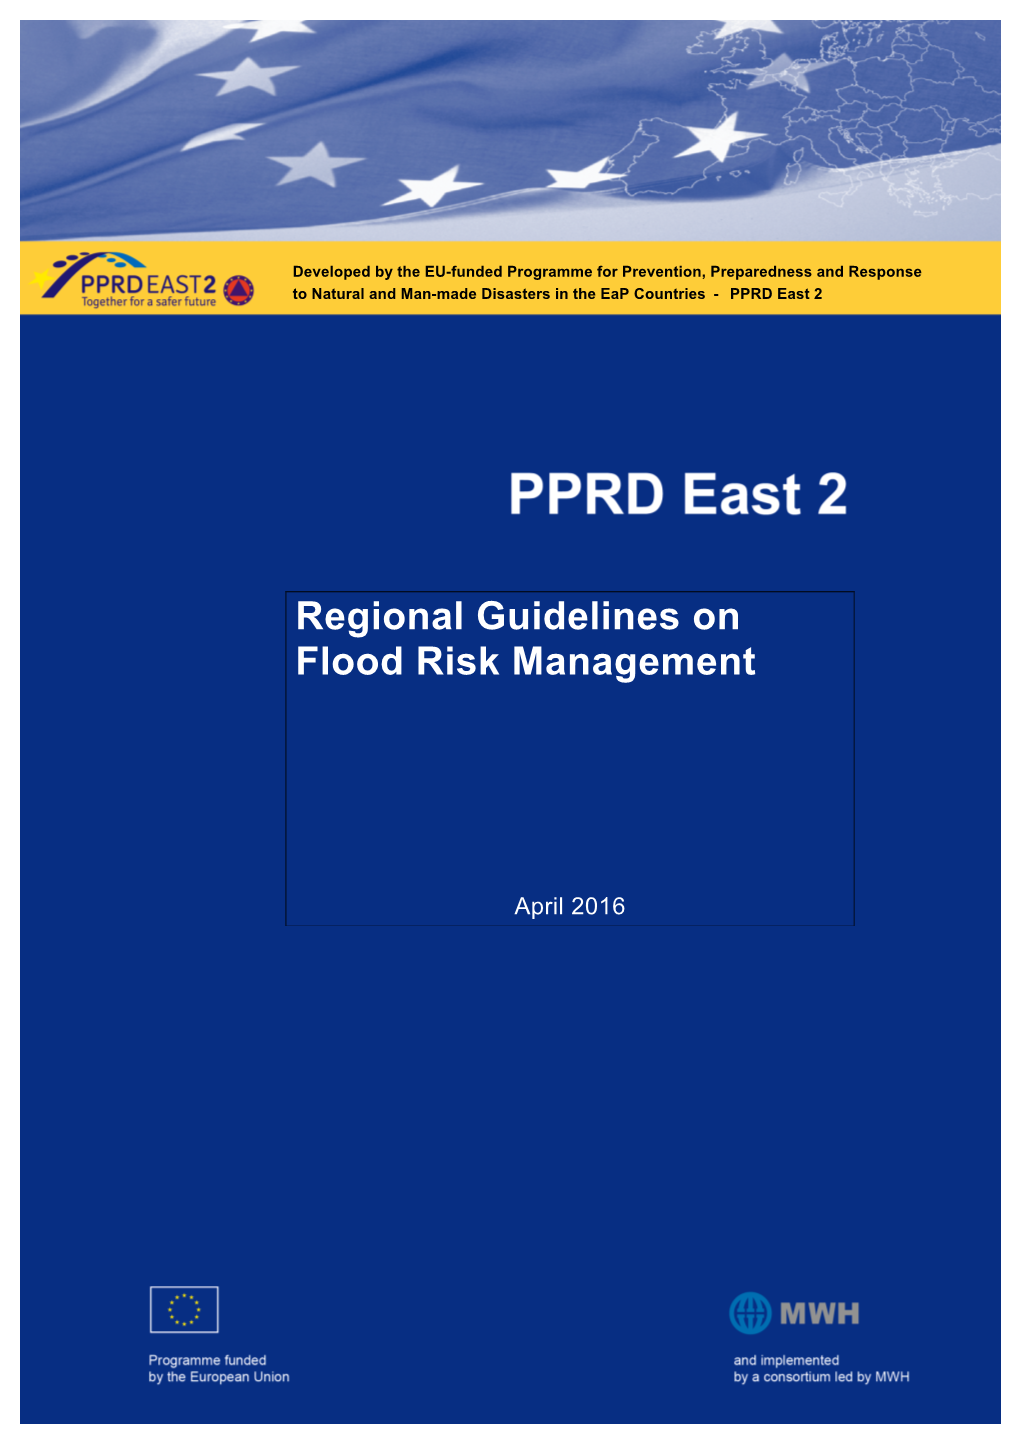 Regional Guidelines on Flood Risk Management